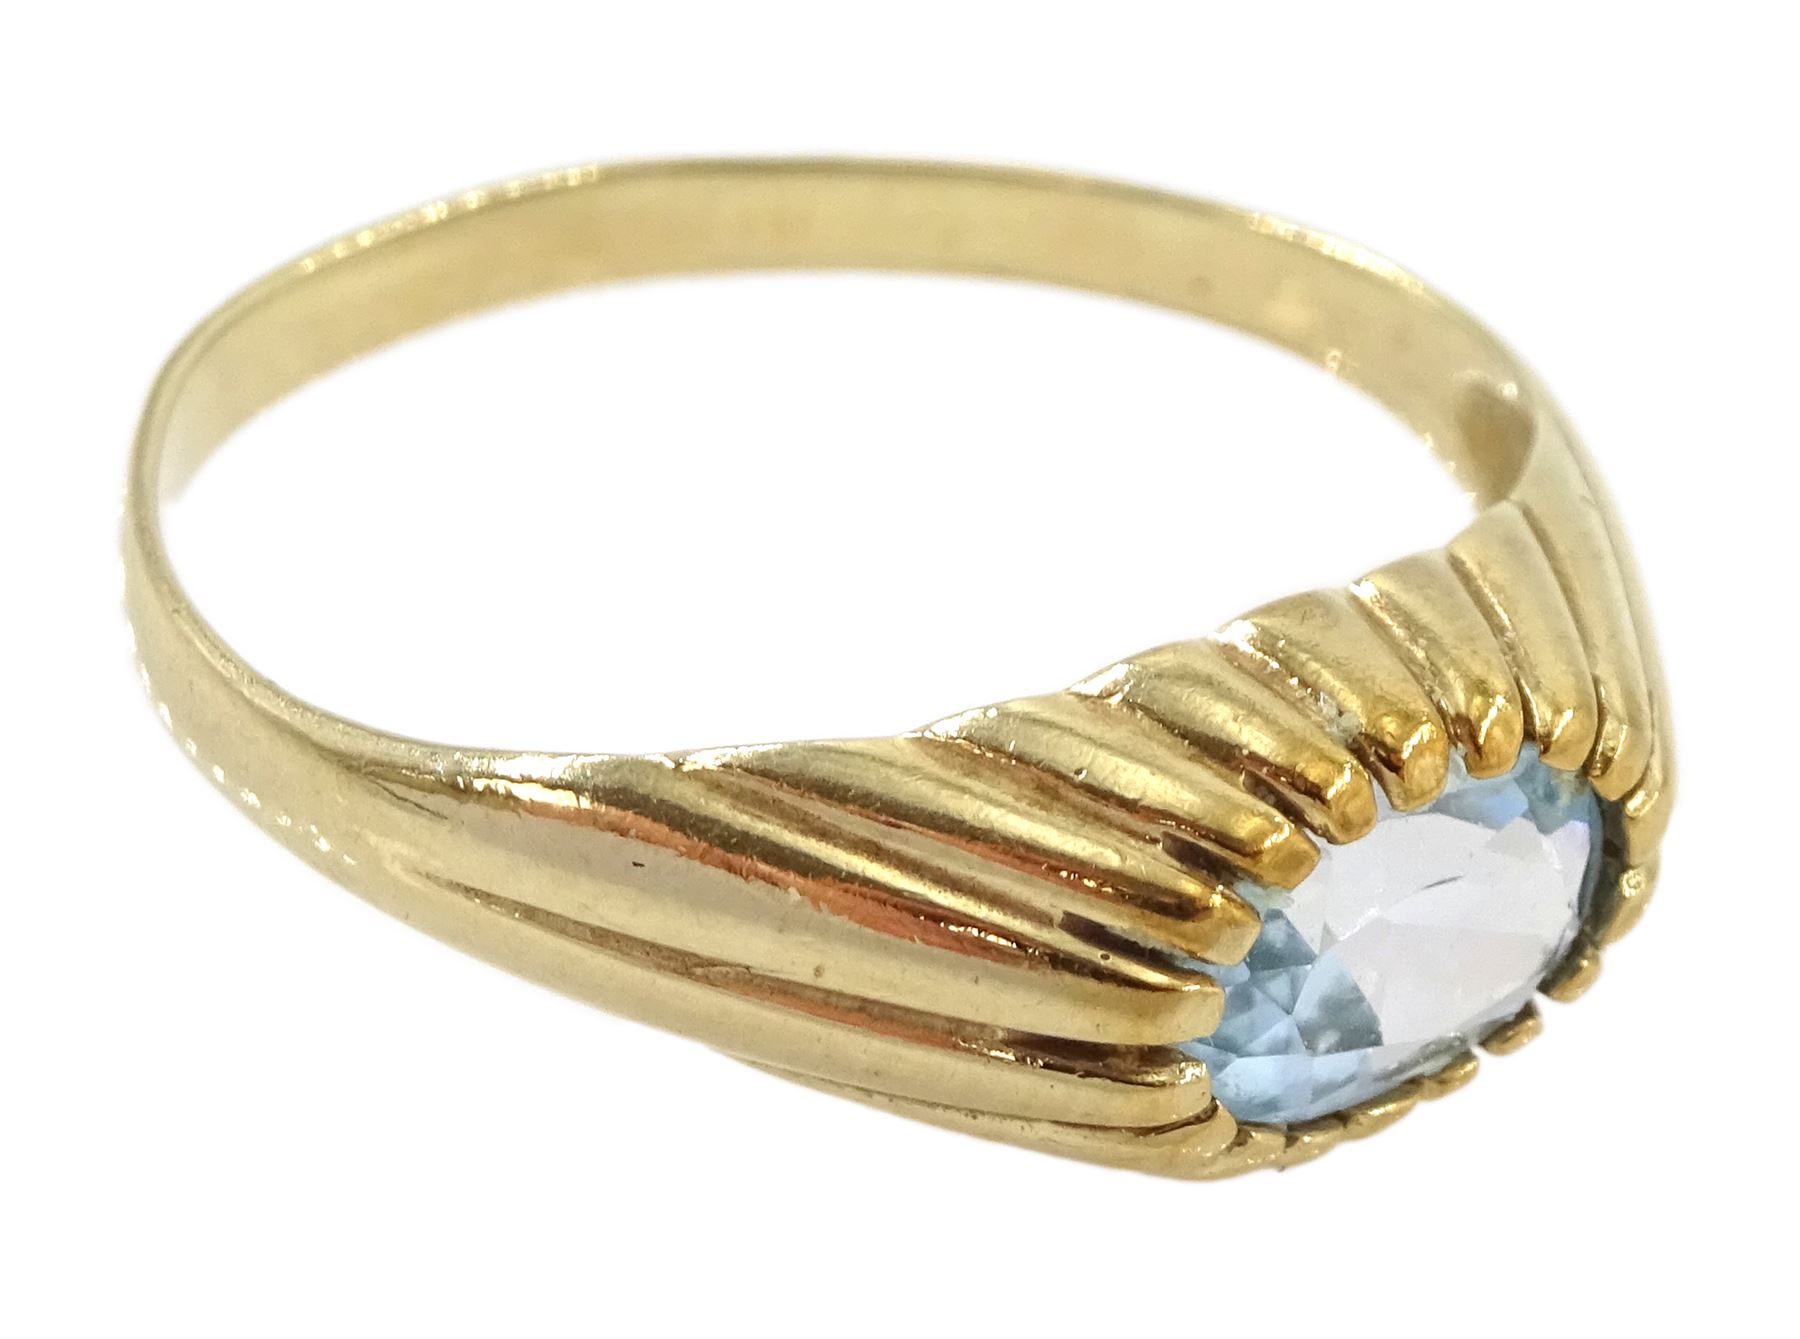 9ct gold single stone oval aquamarine ring - Image 3 of 4